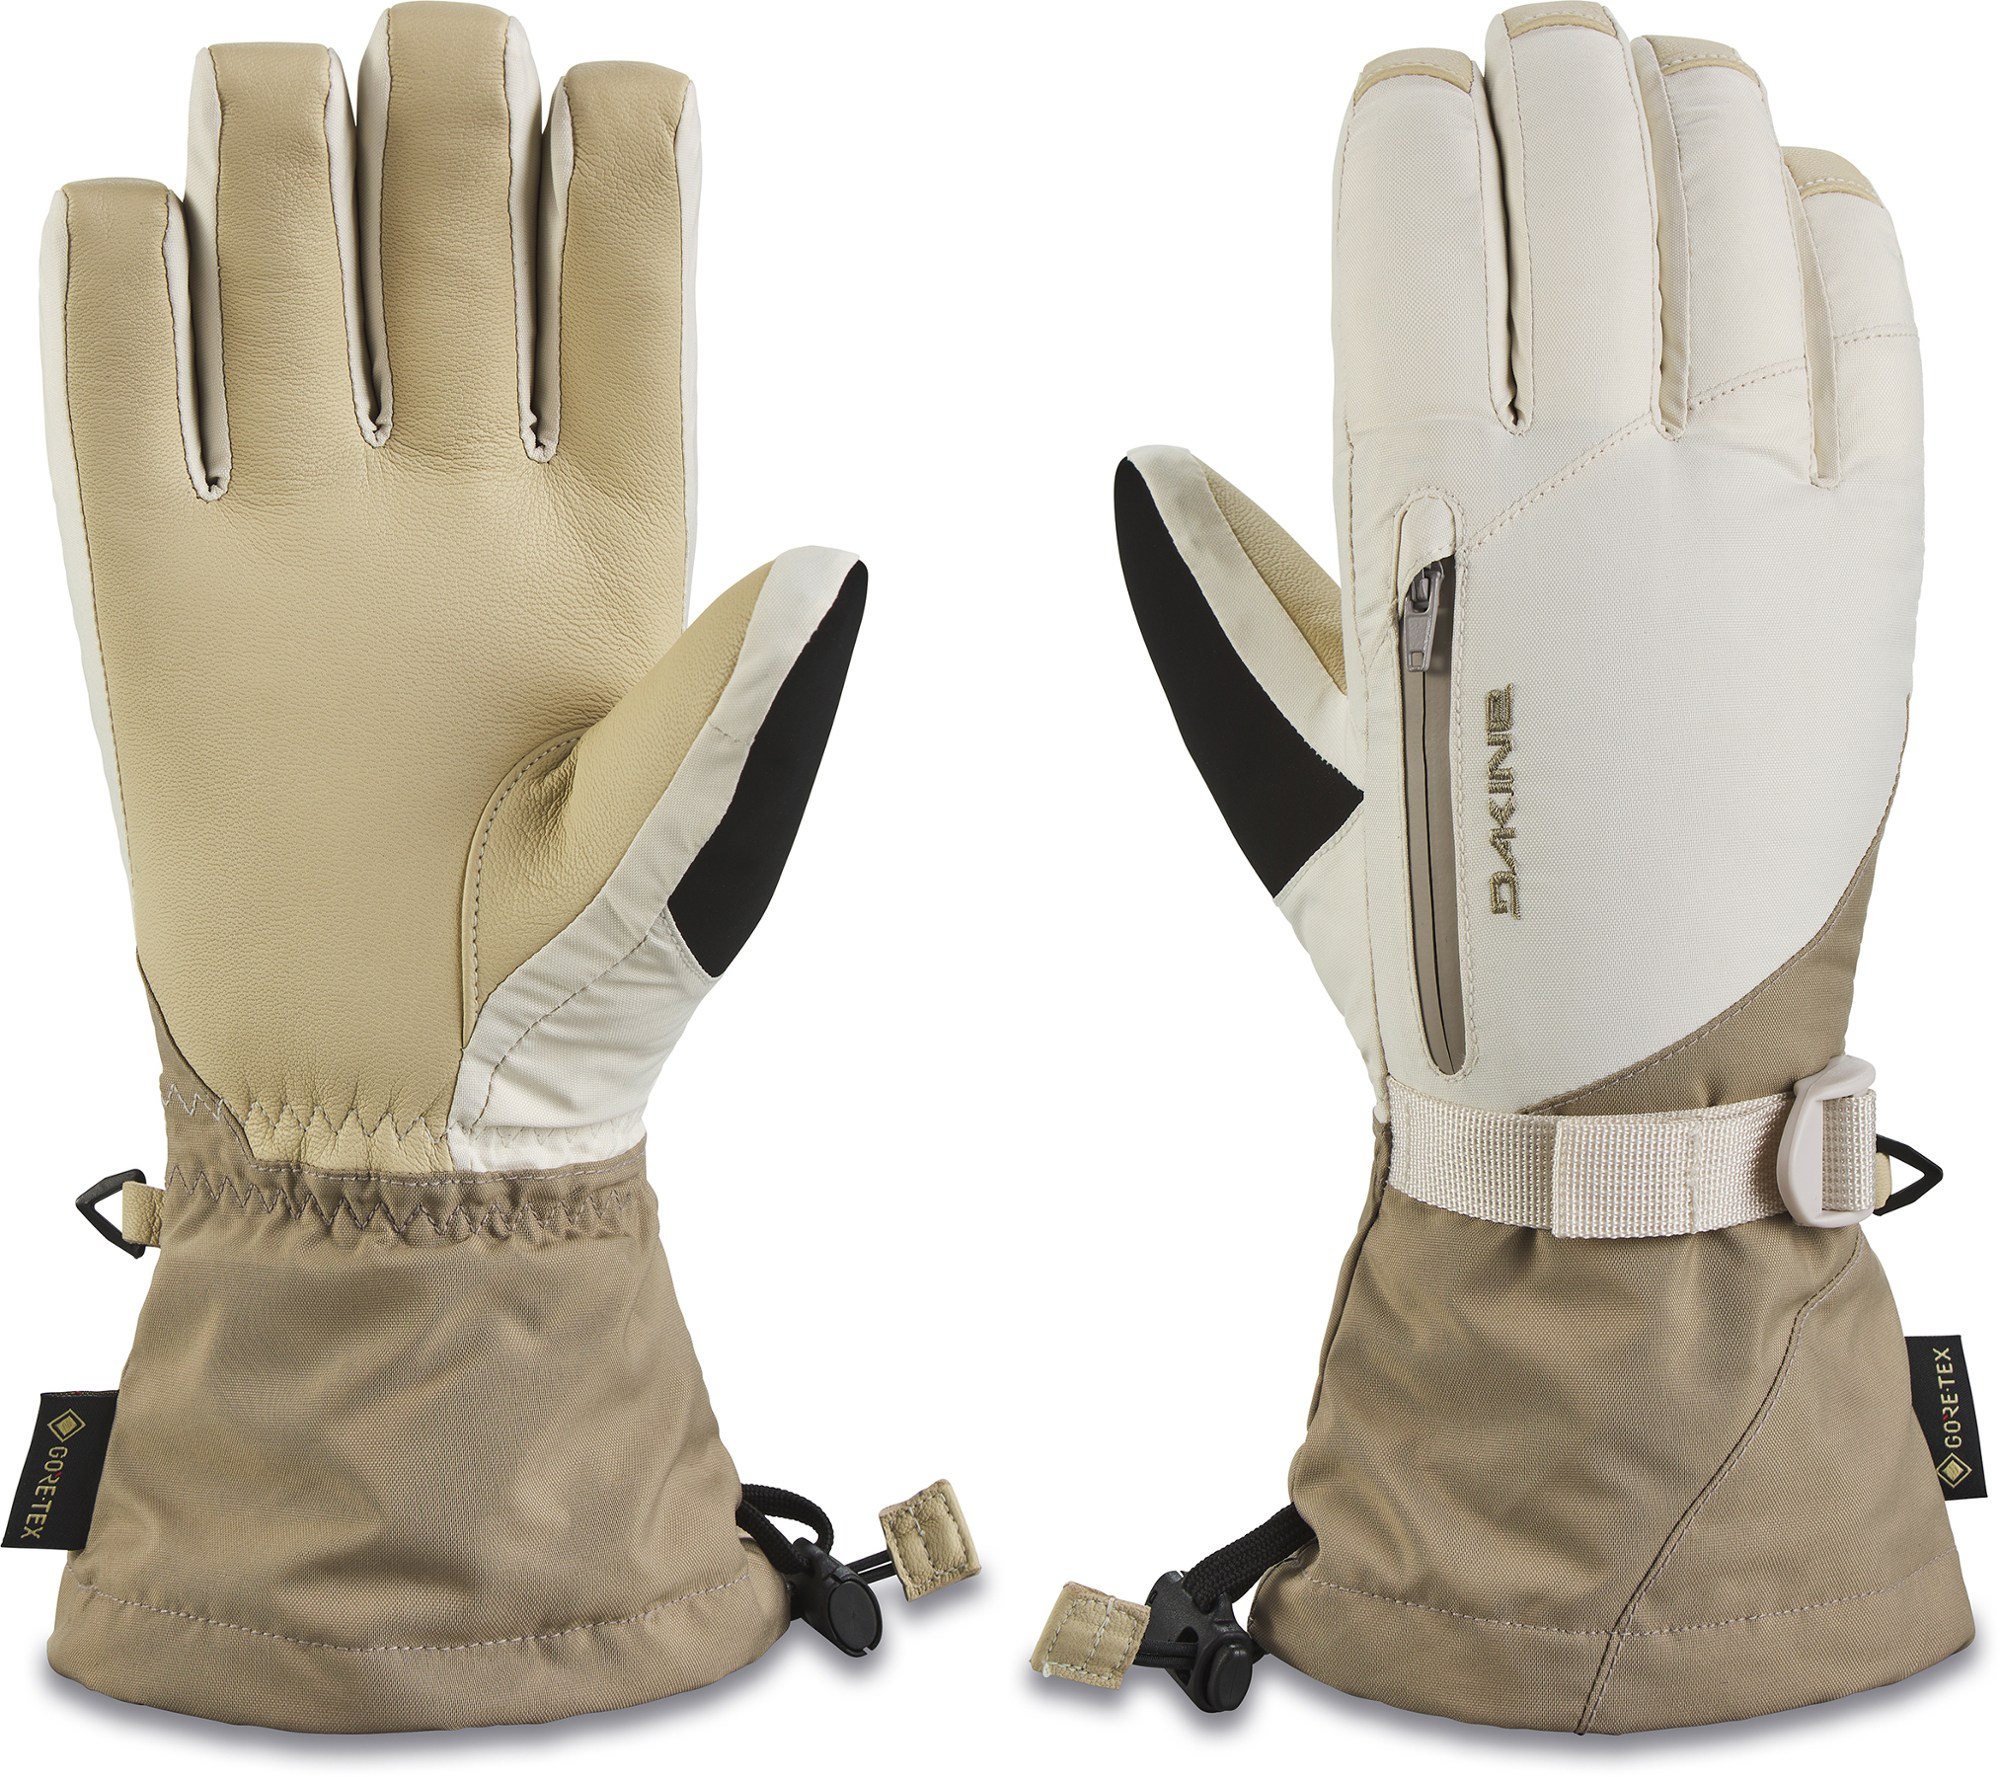 Кожаные перчатки Sequoia GORE-TEX 3-в-1 — женские DAKINE, хаки